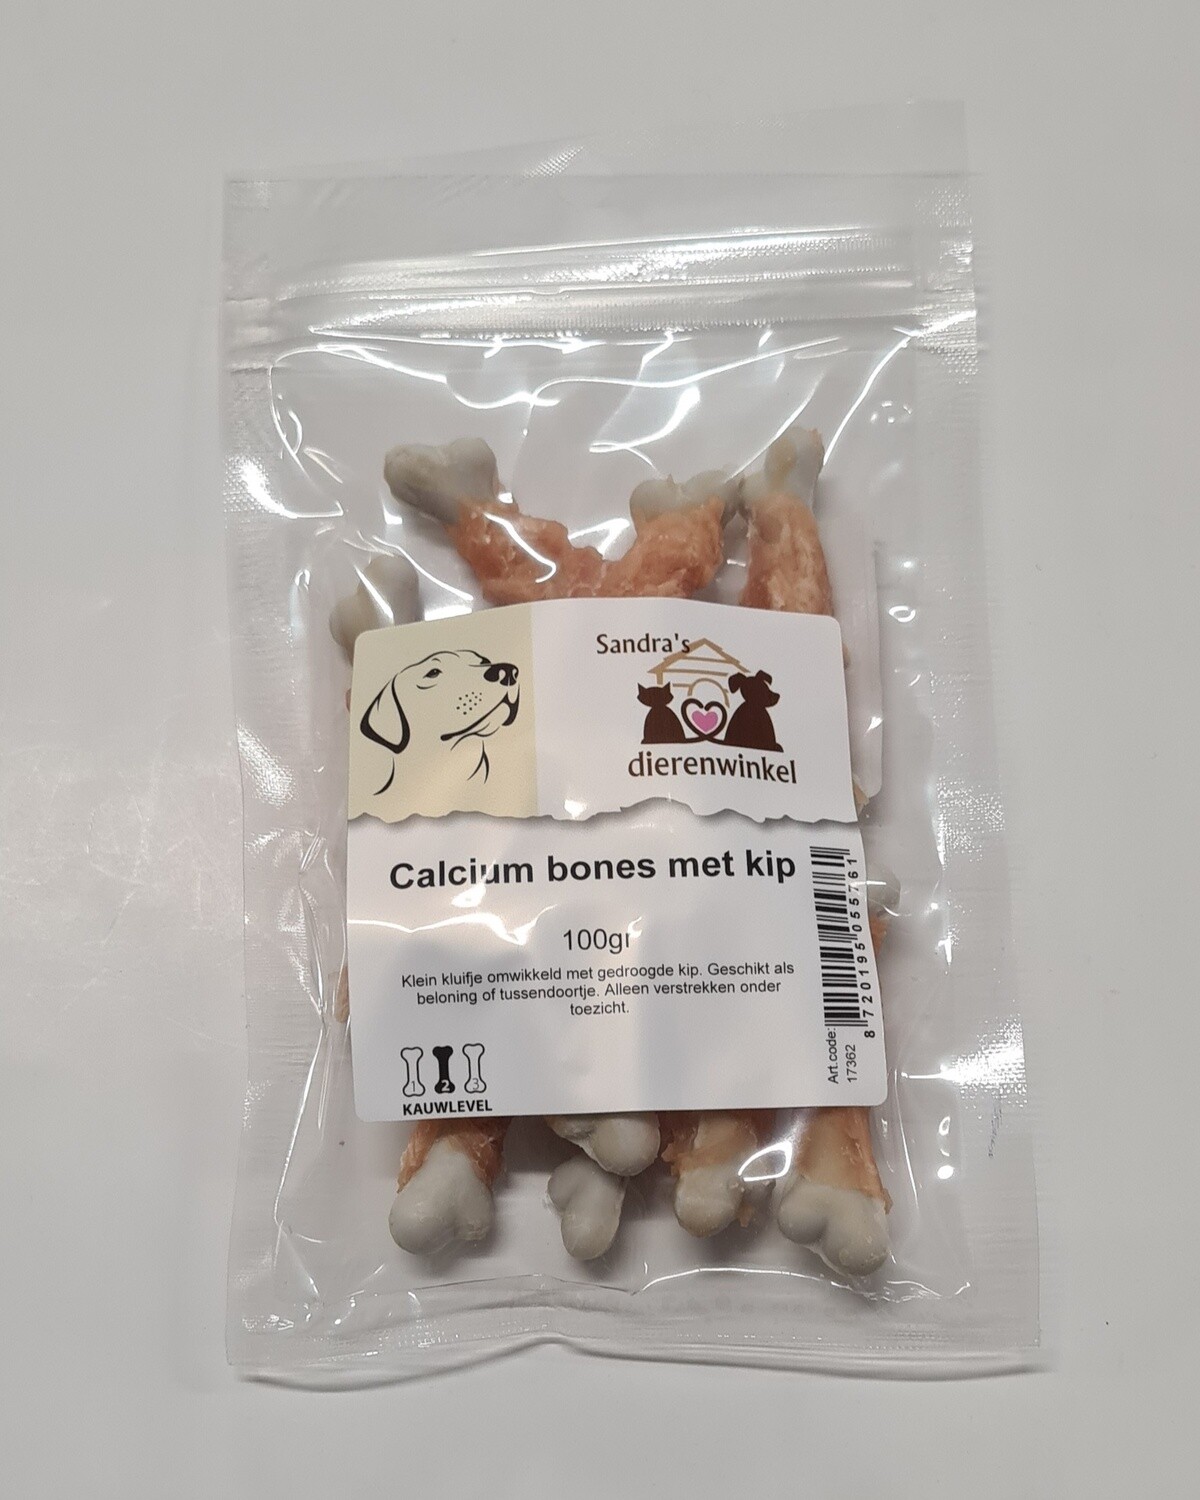 Calcium bones met kip 100gr